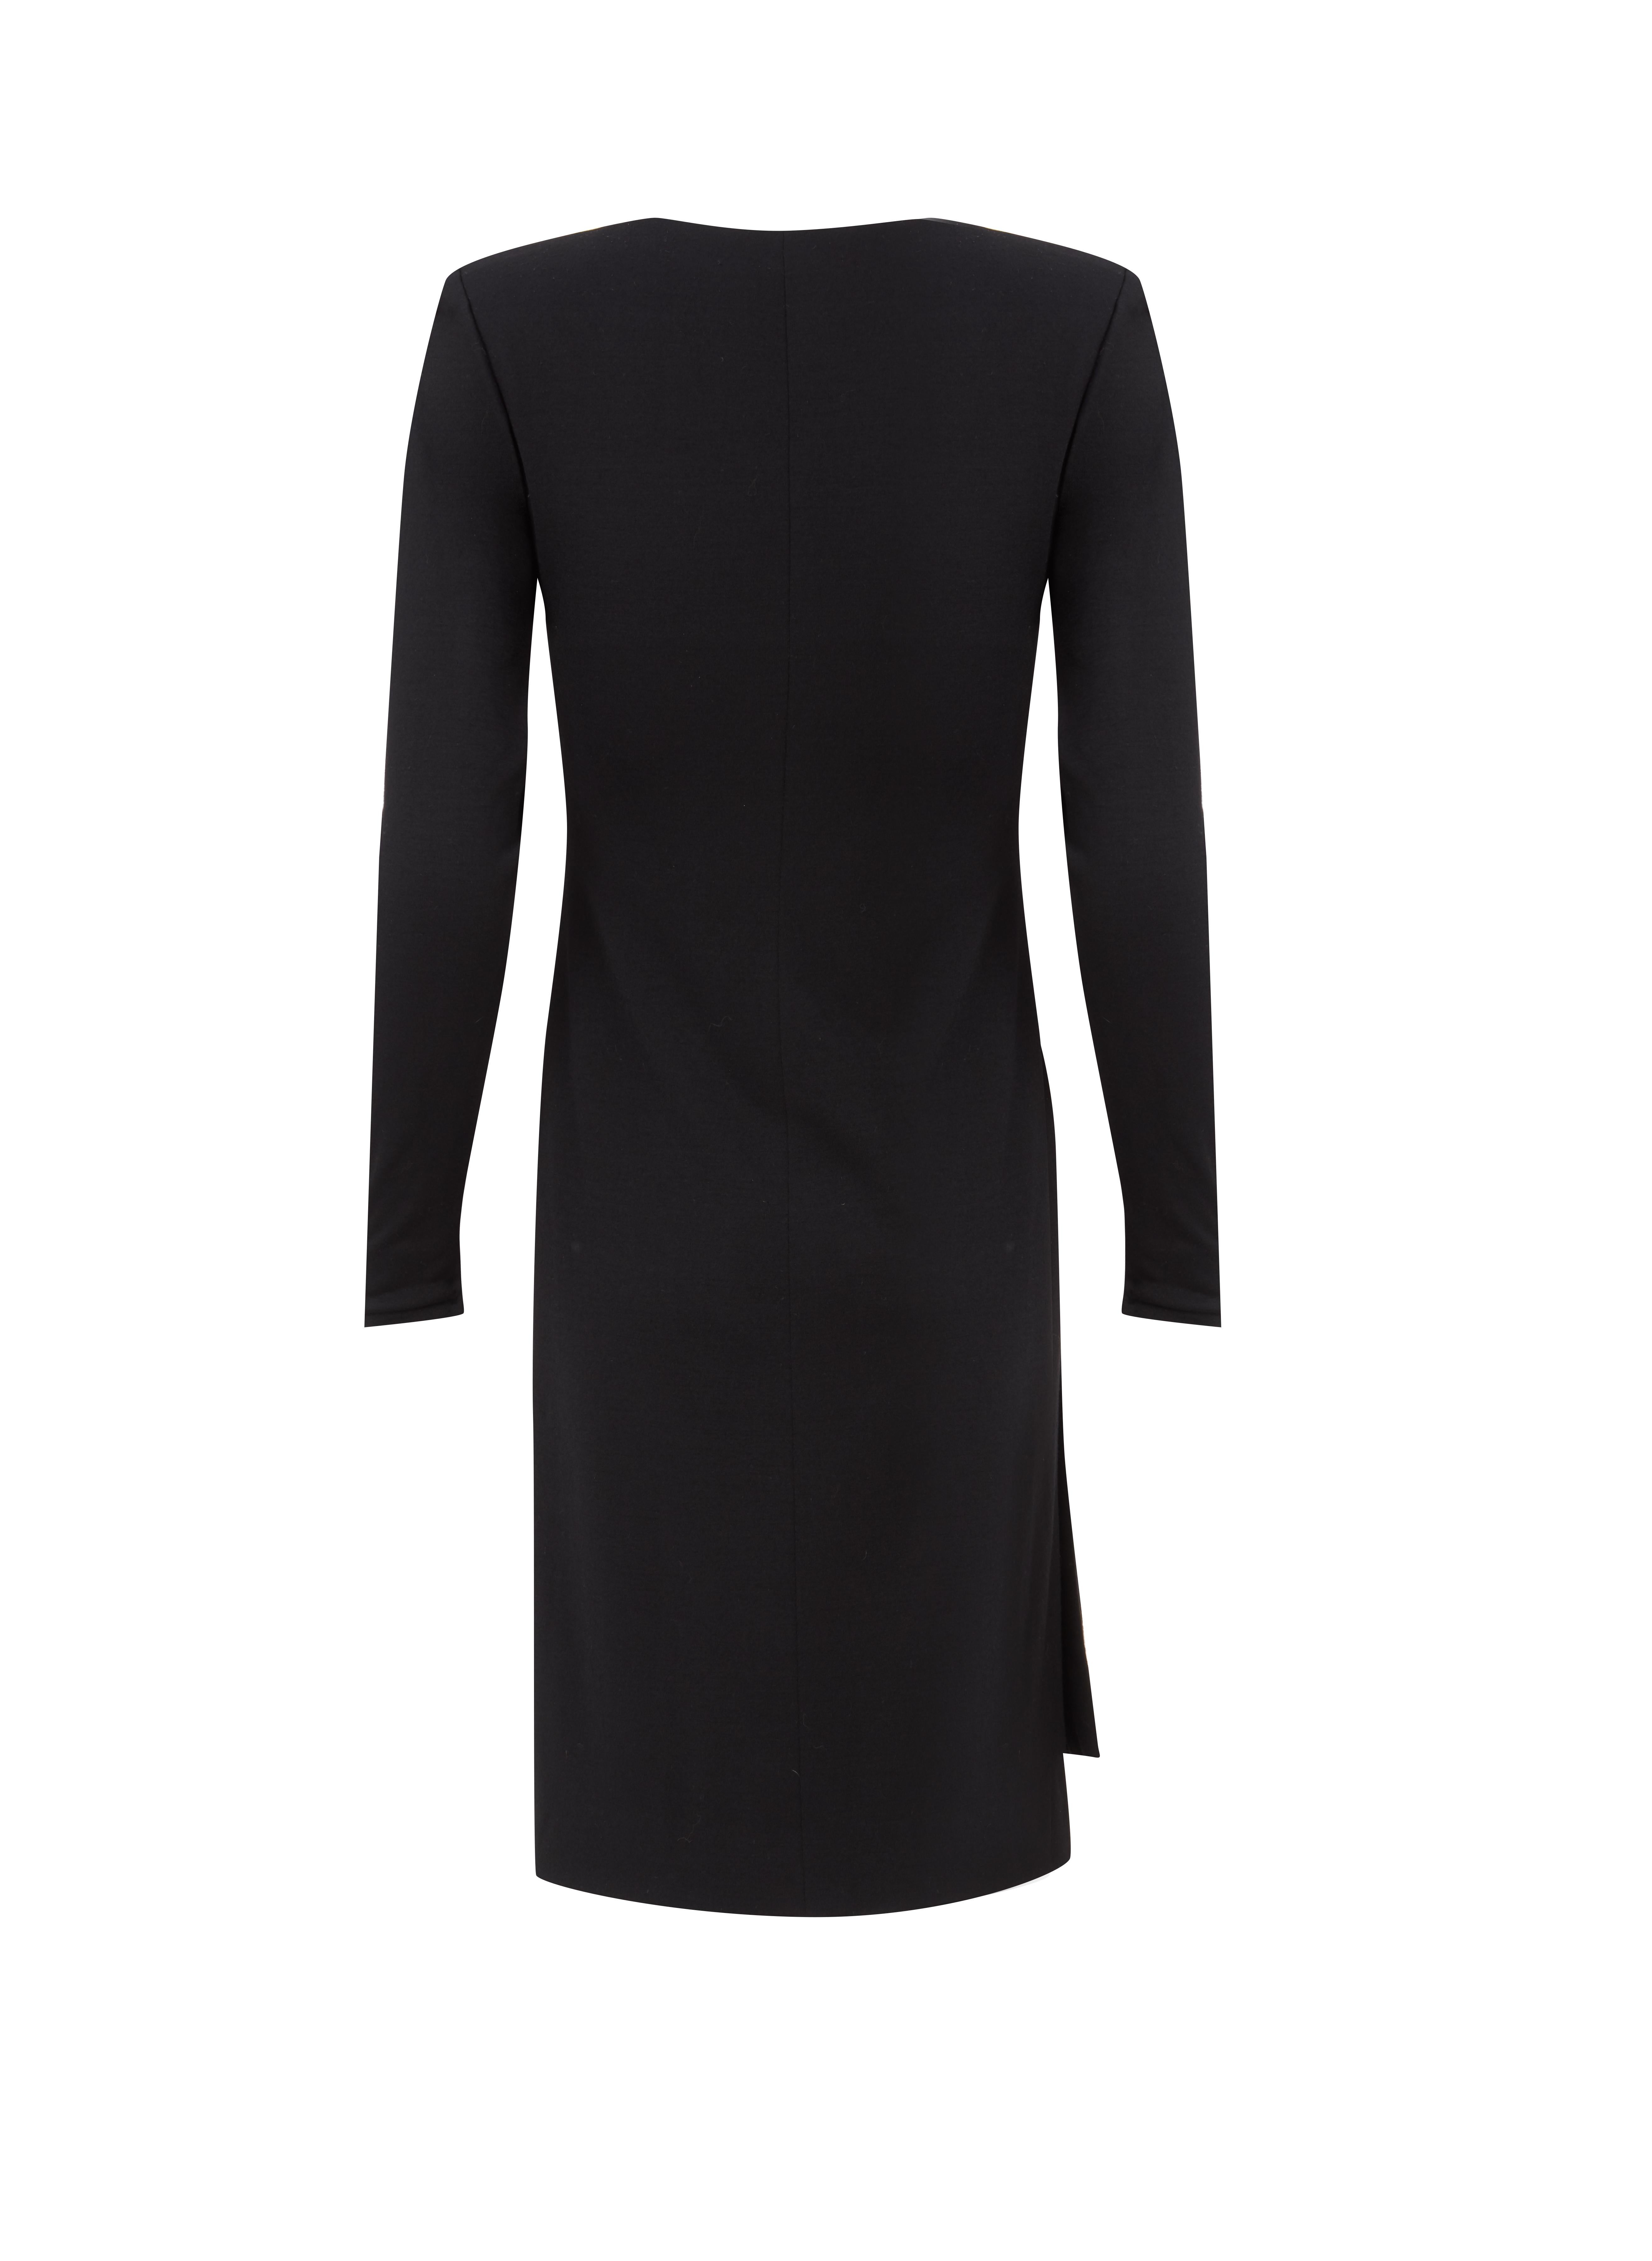 Yves Saint Laurent Haute Couture Wrap Dress black, Circa 1983